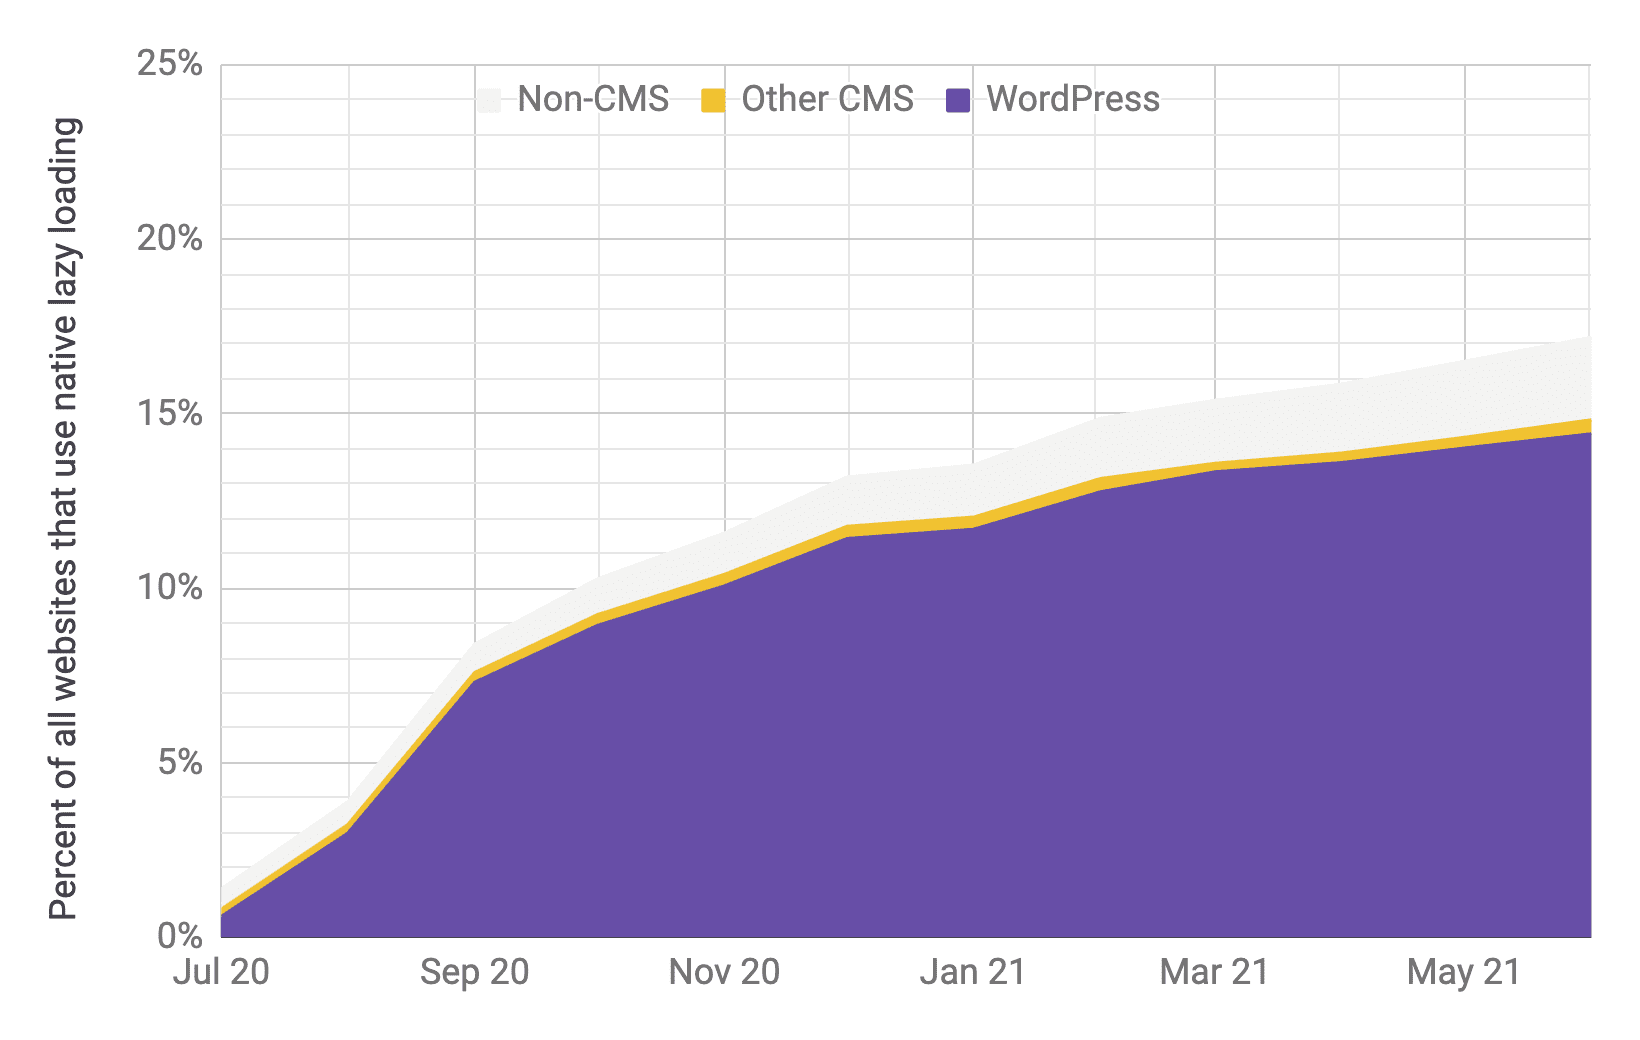 Önceki grafikle benzer oranlara sahip diğer içerik yönetim sistemlerine ve içerik yönetim sistemi olmayanlara kıyasla WordPress&#39;in baskın olduğu geç yüklemenin benimsenmeyle ilgili zaman serisi grafiği. Temmuz 2020 - Haziran 2021 arasında toplam benimseme oranının% 1&#39;den% 17&#39;ye yükseldiği görülüyor.